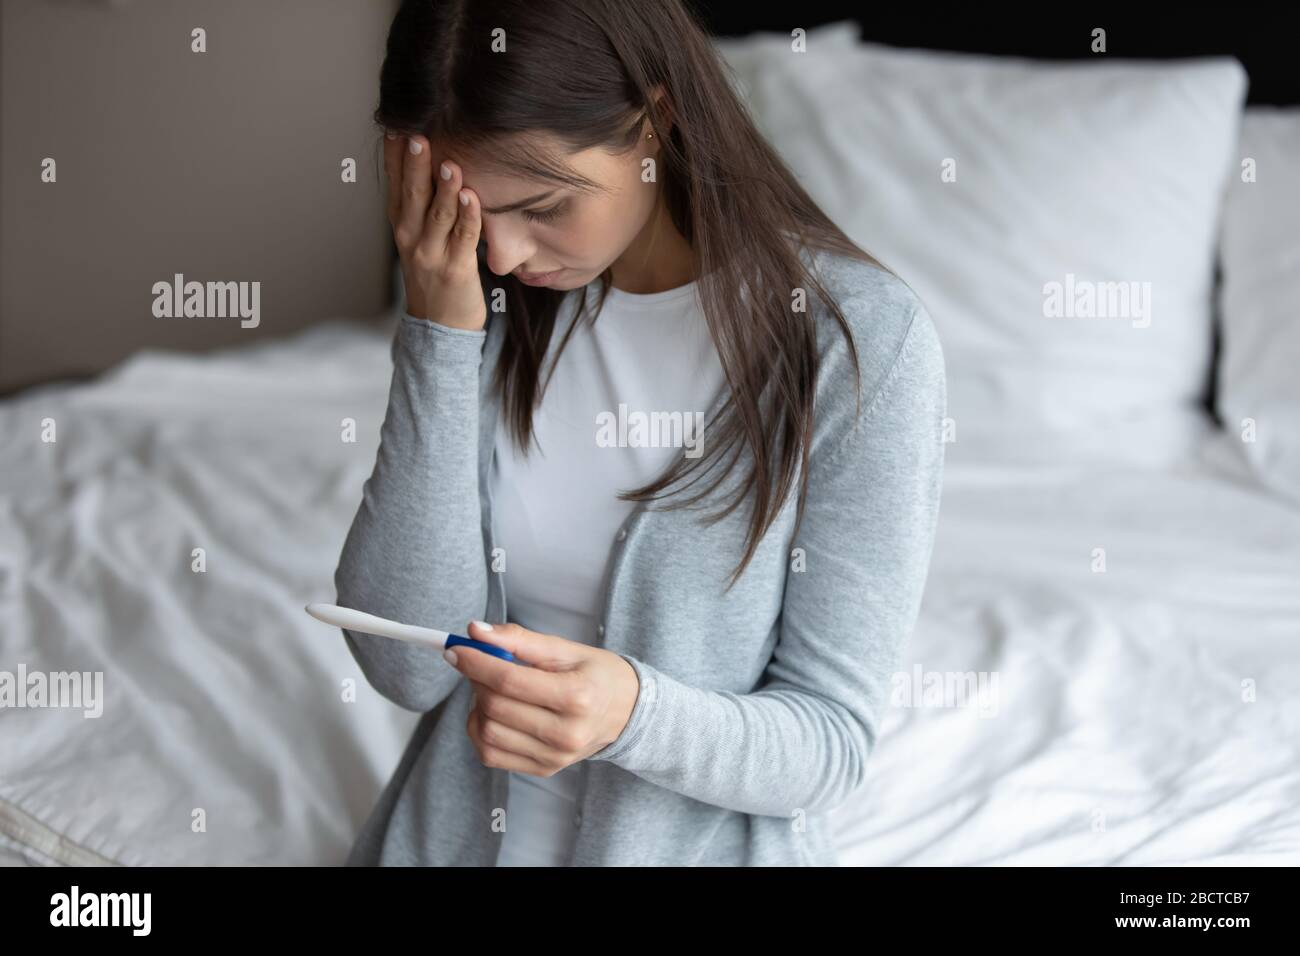 La jeune femme bouleversée se sent déçue du résultat du test d'ovulation Banque D'Images